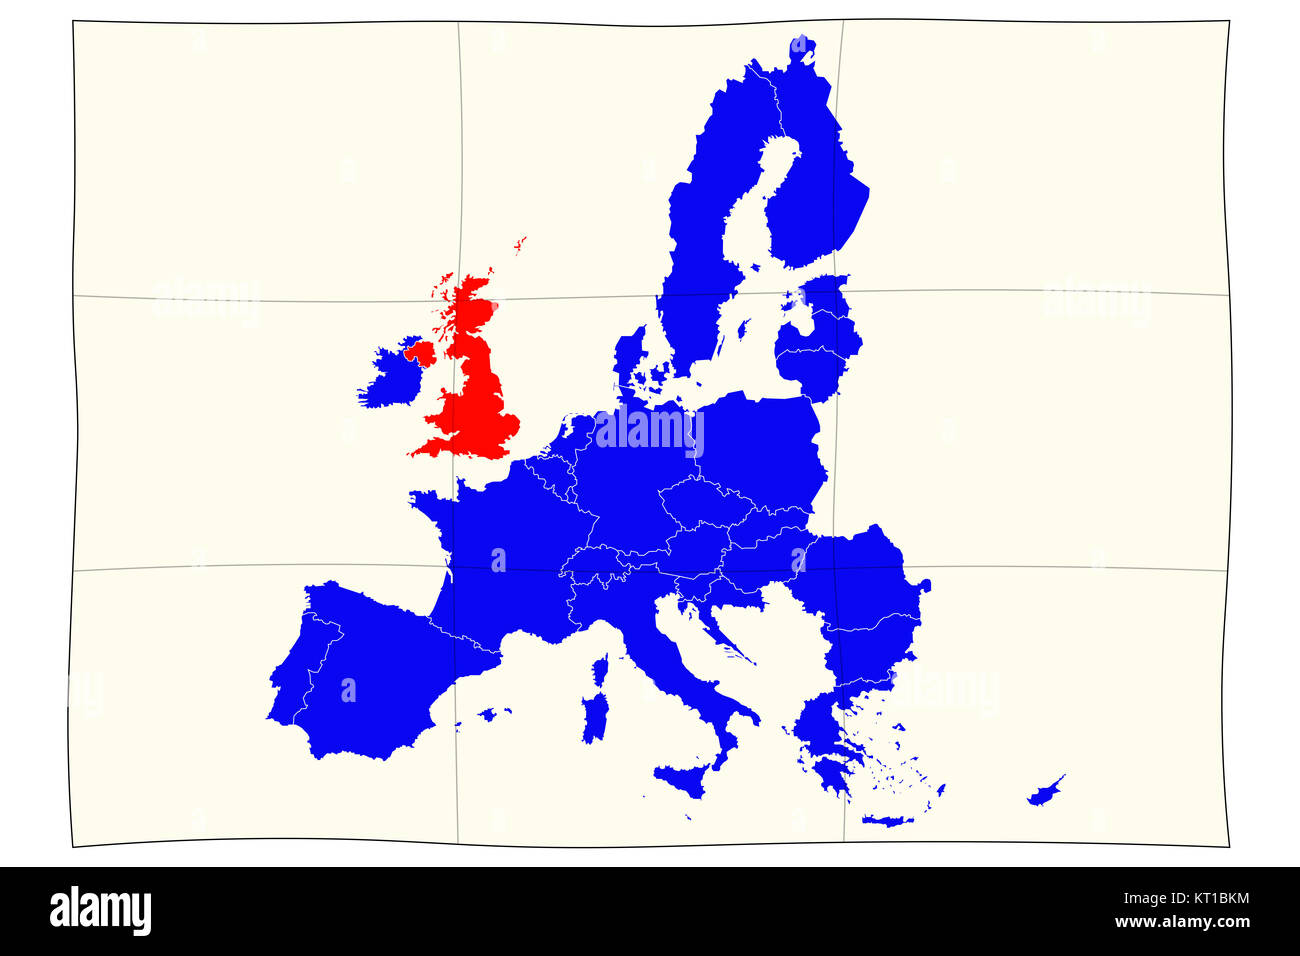 Mappa di Europa per la proposta di referendum sul regno unito l'adesione all'Unione europea Foto Stock